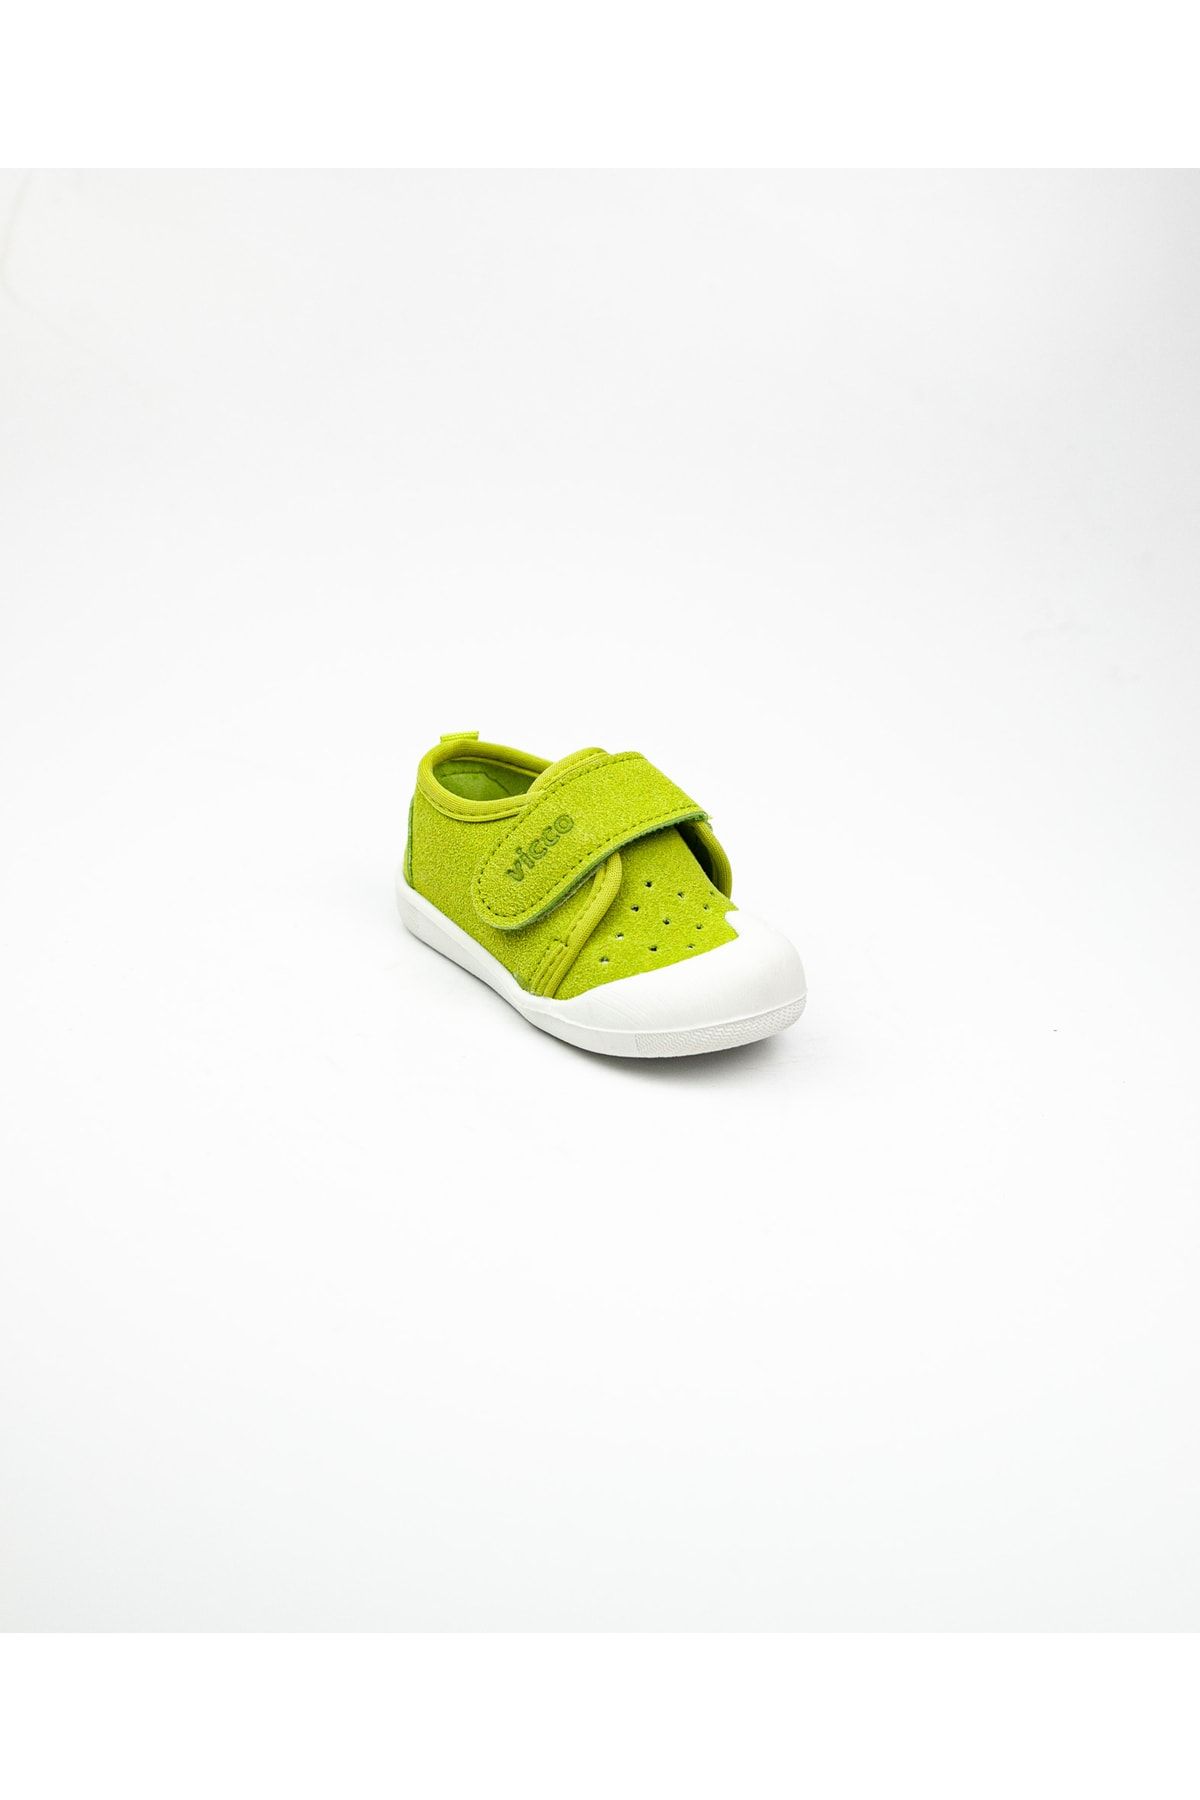 Vicco 950. E19k. 224 Anka Yeşil Deri Ilk Adım Ayakkabısı